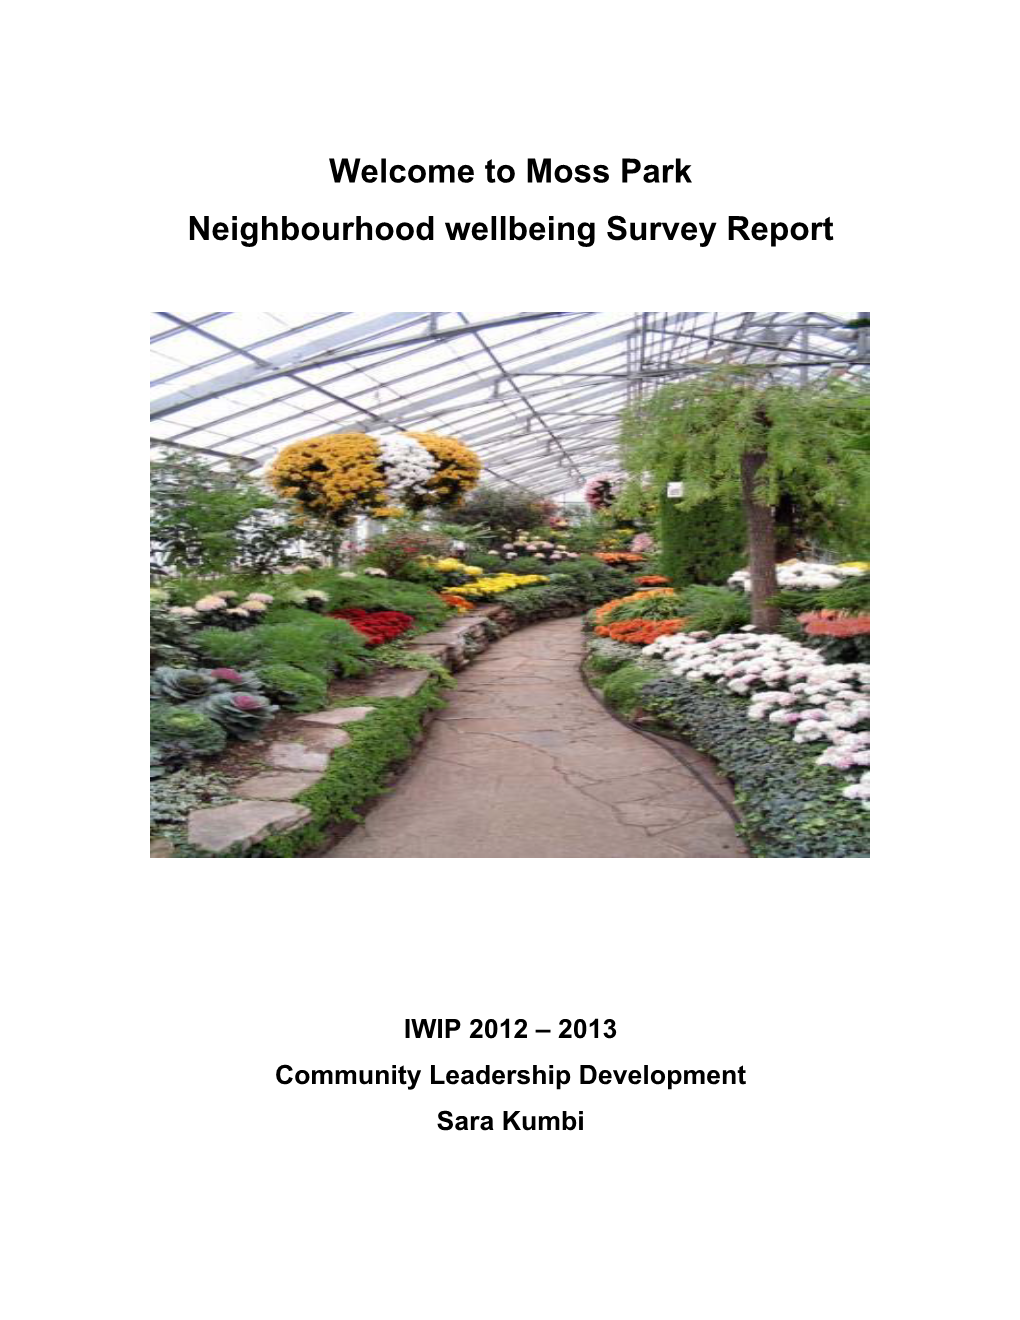 Moss Park Neighbourhood Wellbeing Survey Report